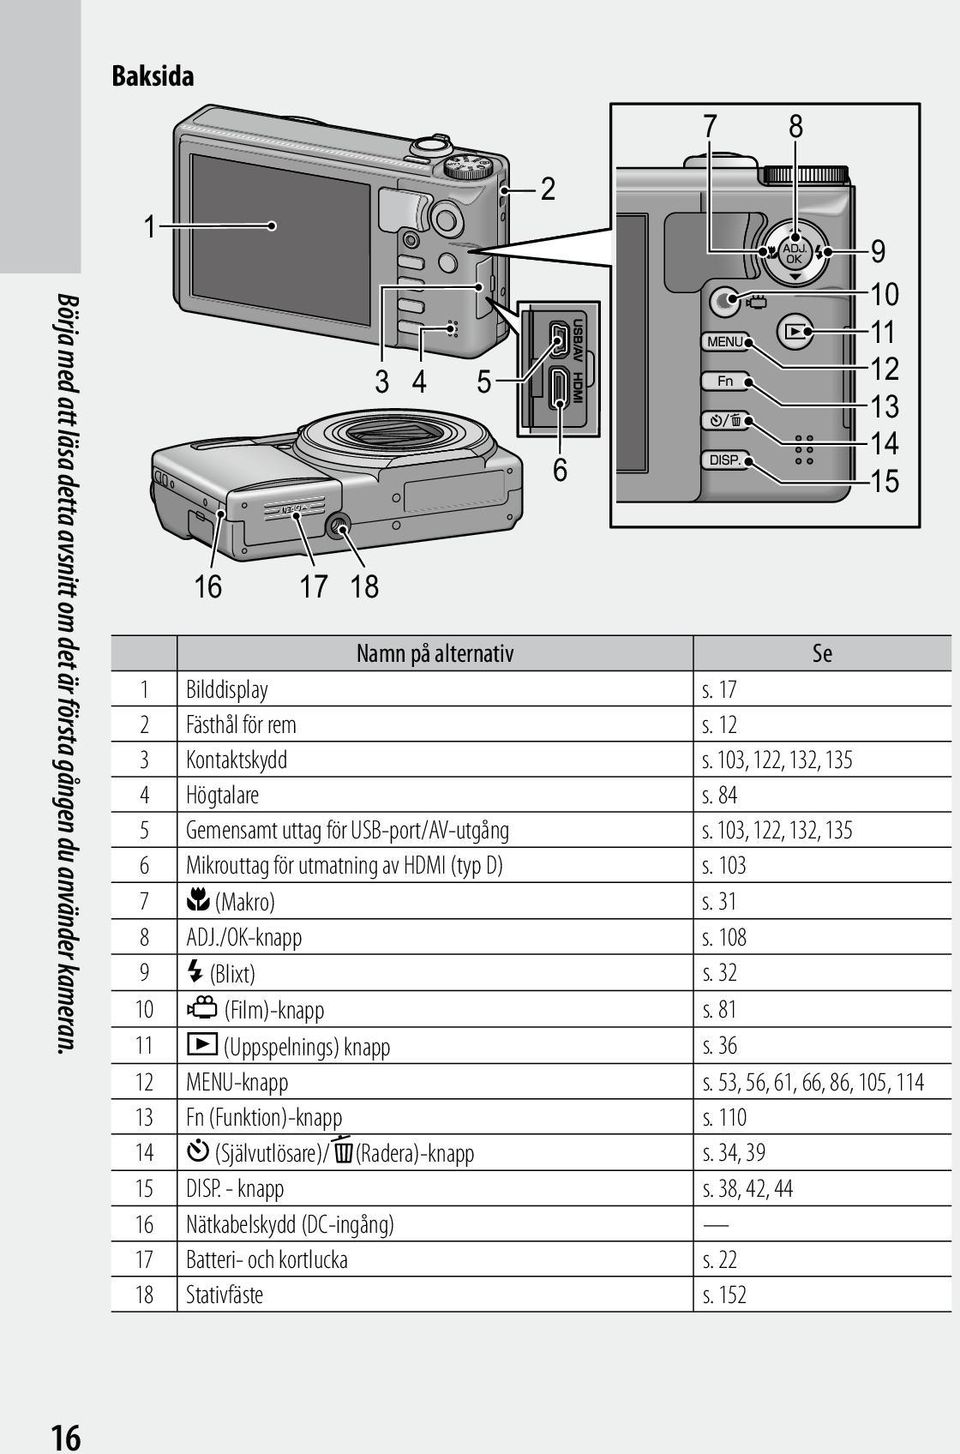 103, 122, 132, 135 6 Mikrouttag för utmatning av HDMI (typ D) s. 103 7 N (Makro) s. 31 8 ADJ./OK-knapp s. 108 9 F (Blixt) s. 32 10 3 (Film)-knapp s. 81 11 6 (Uppspelnings) knapp s.